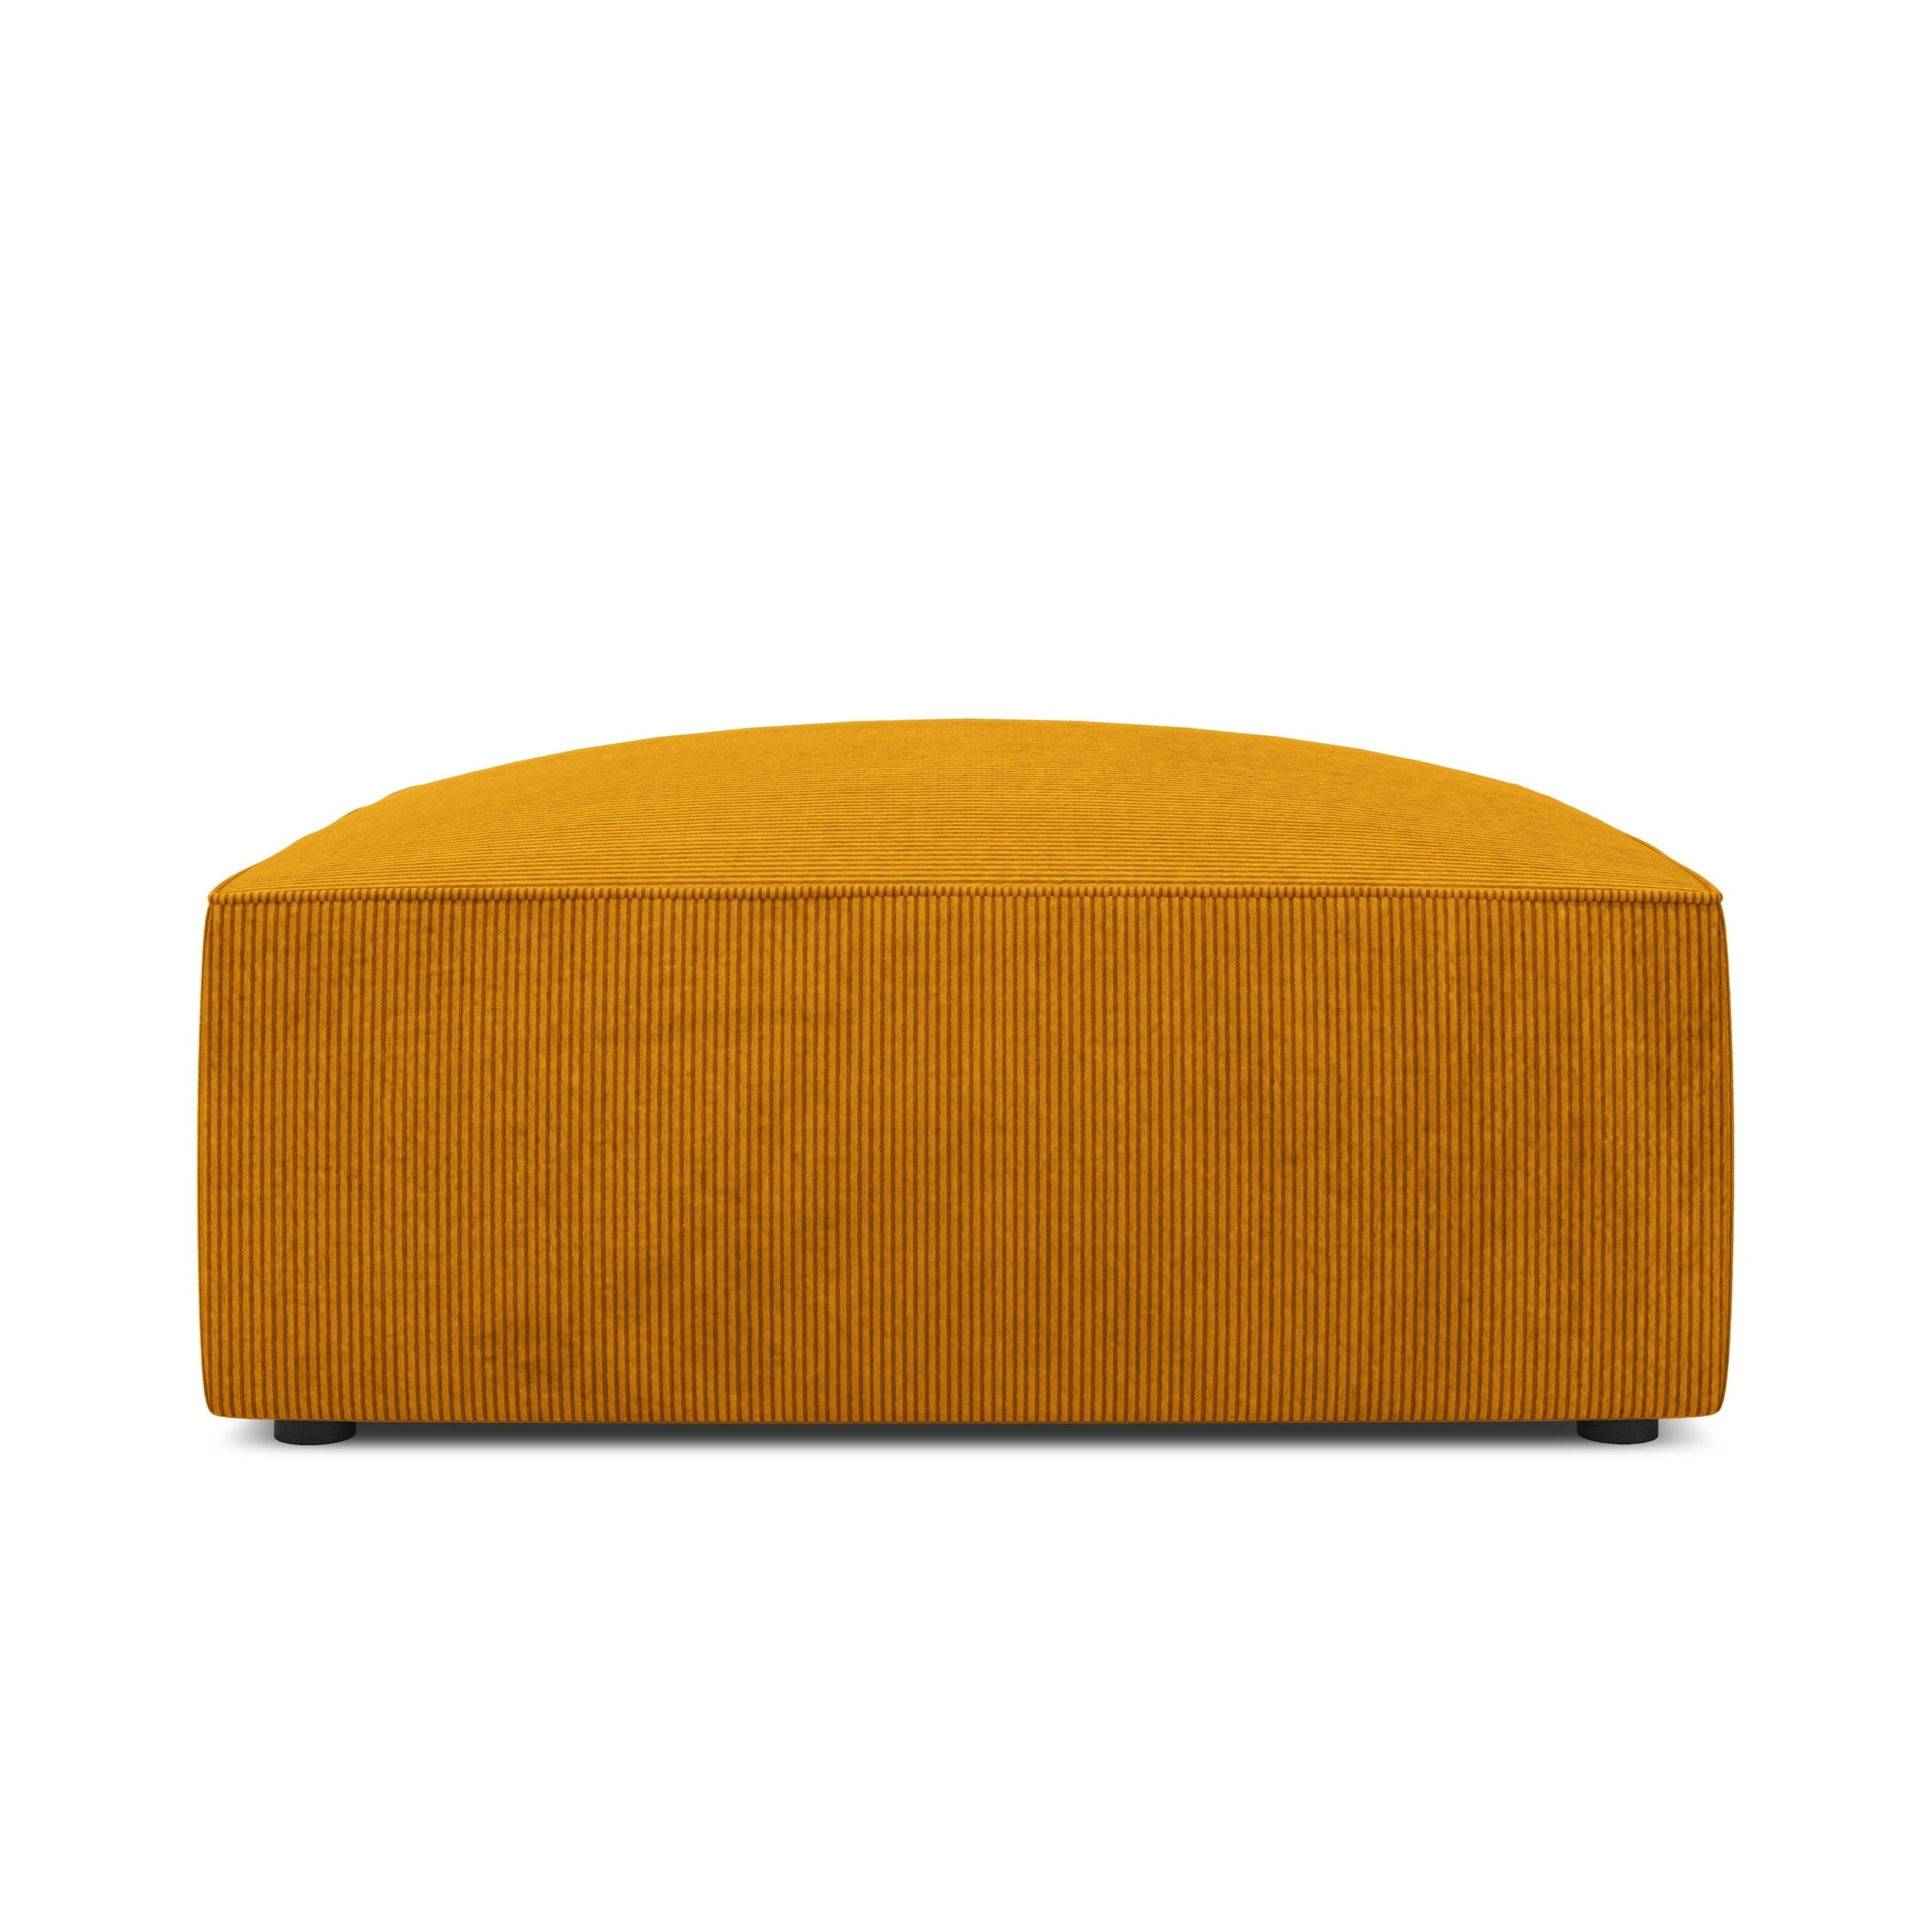 Modern yellow corduroy pouf